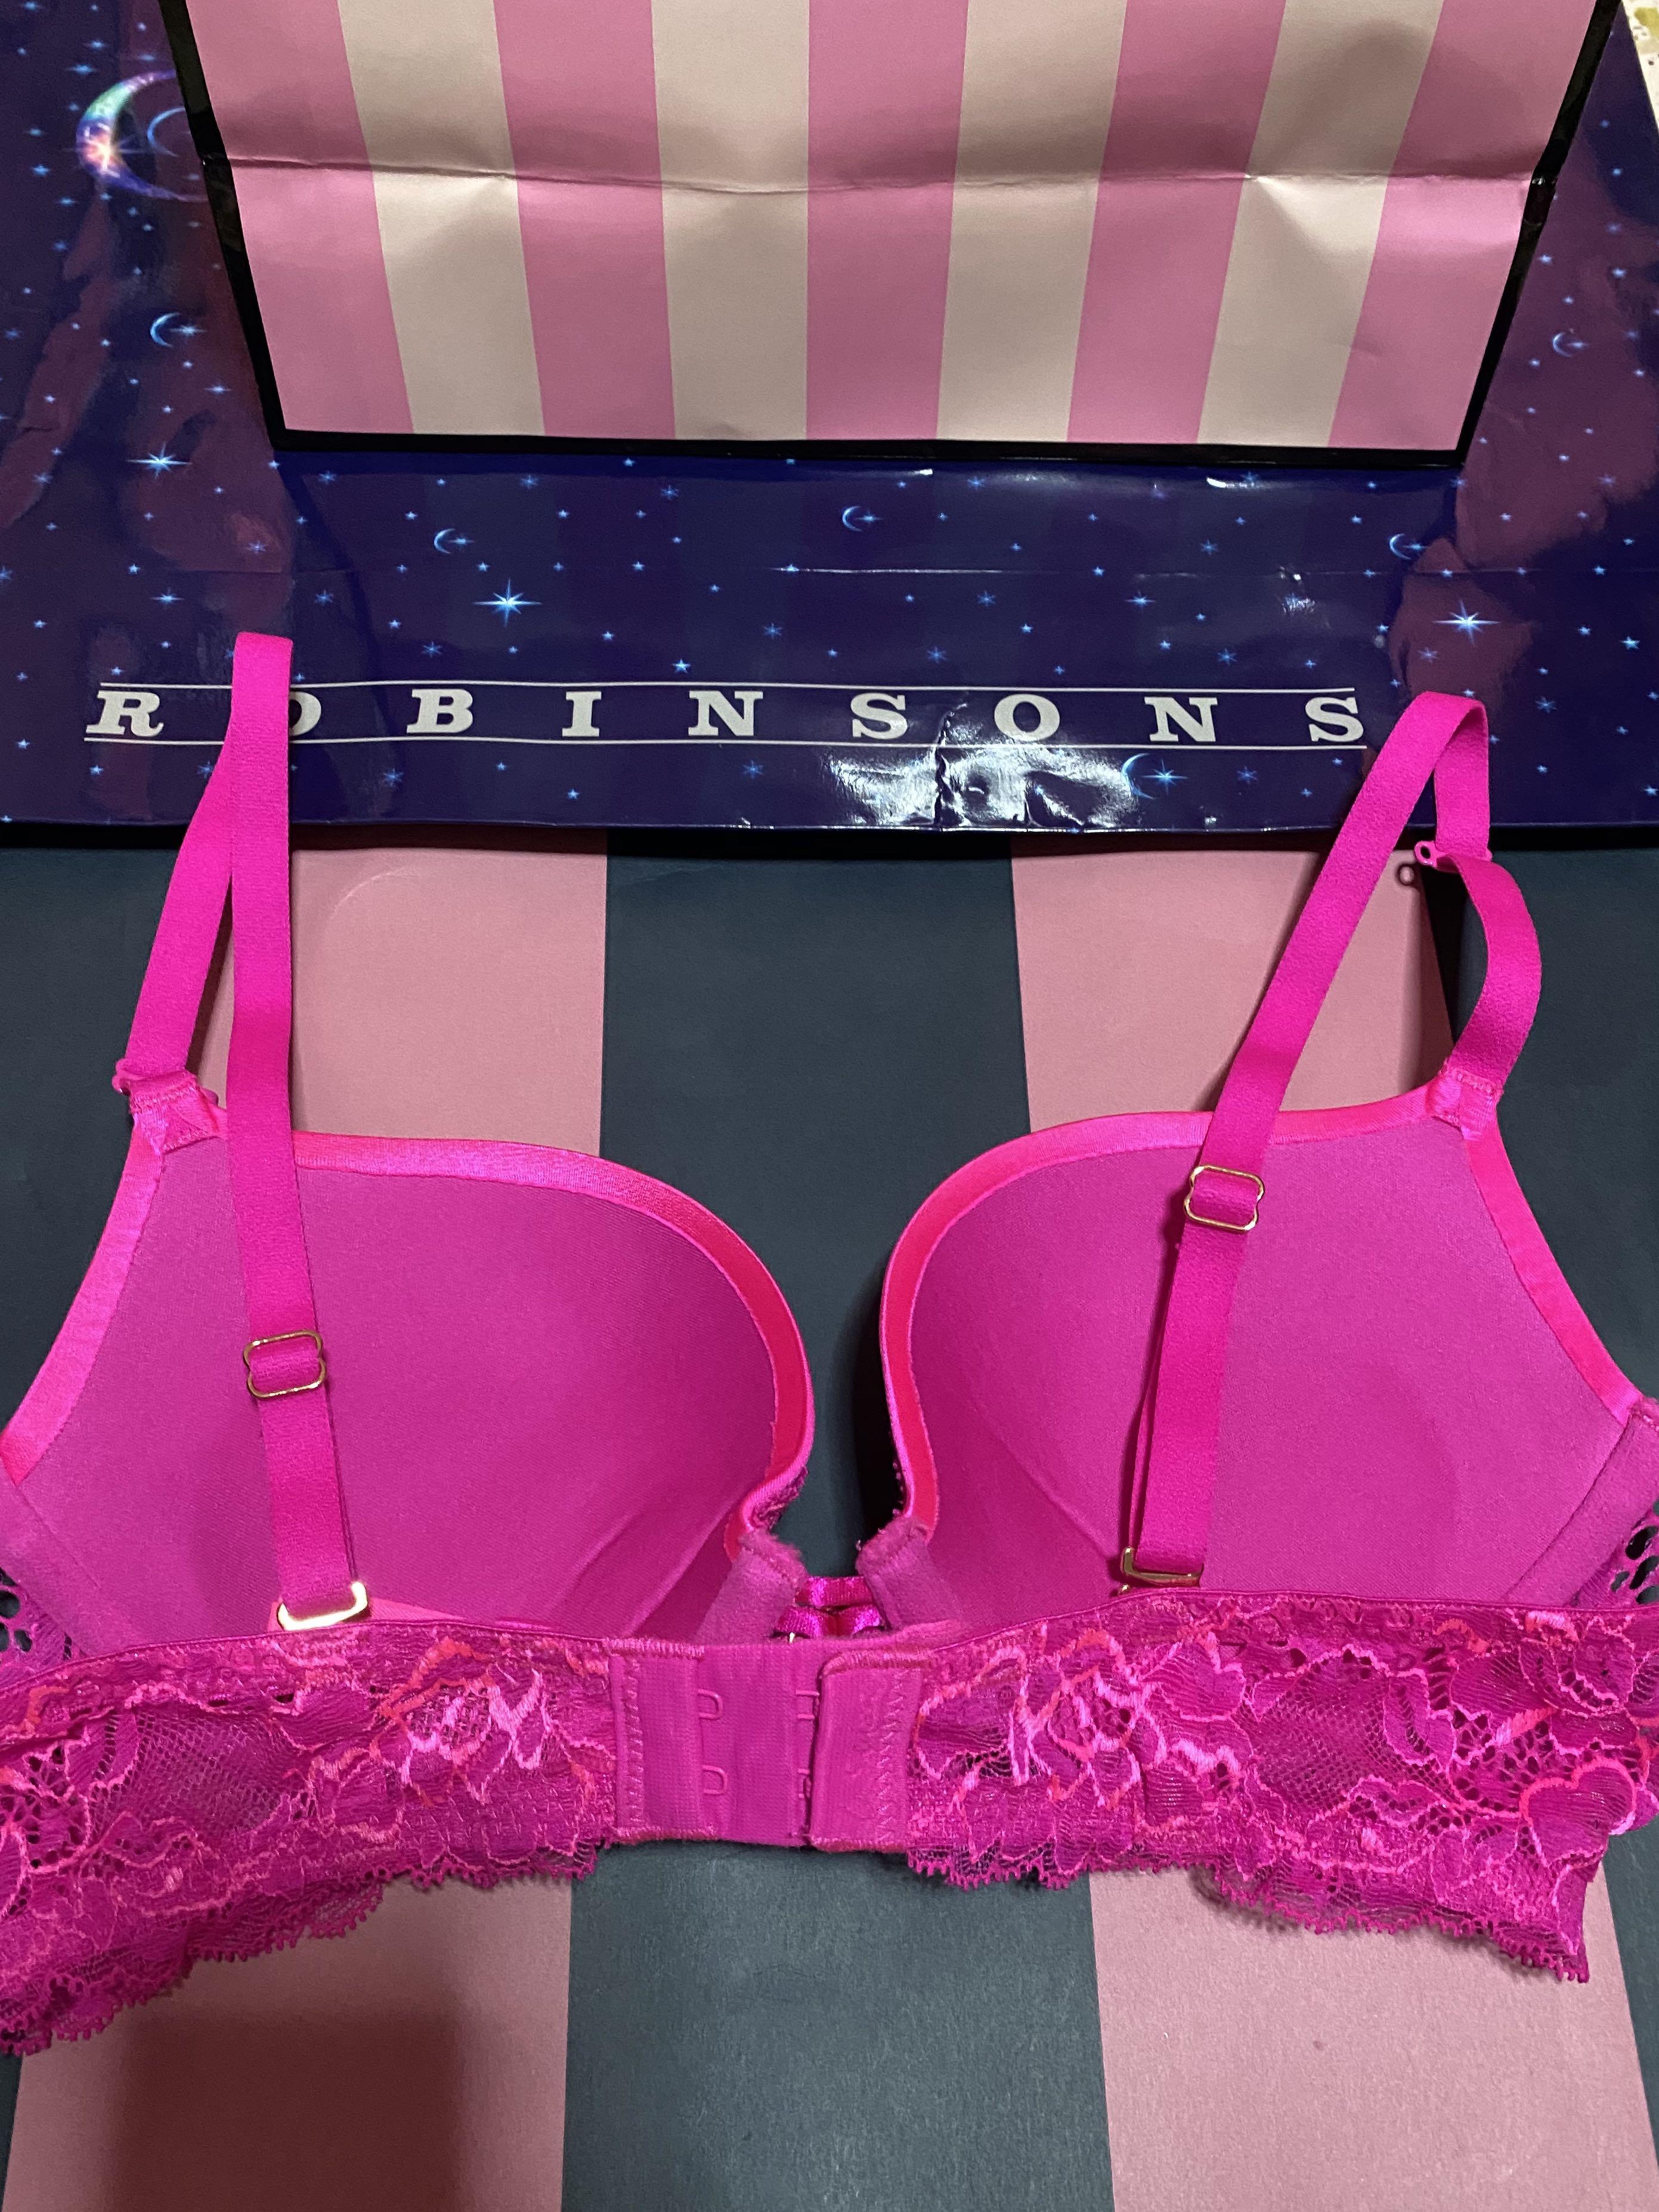 La SENZA, Intimates & Sleepwear, La Senza 3 Way Extreme Push Up Pink Lace Bra  Womens Size 38dd Dd38